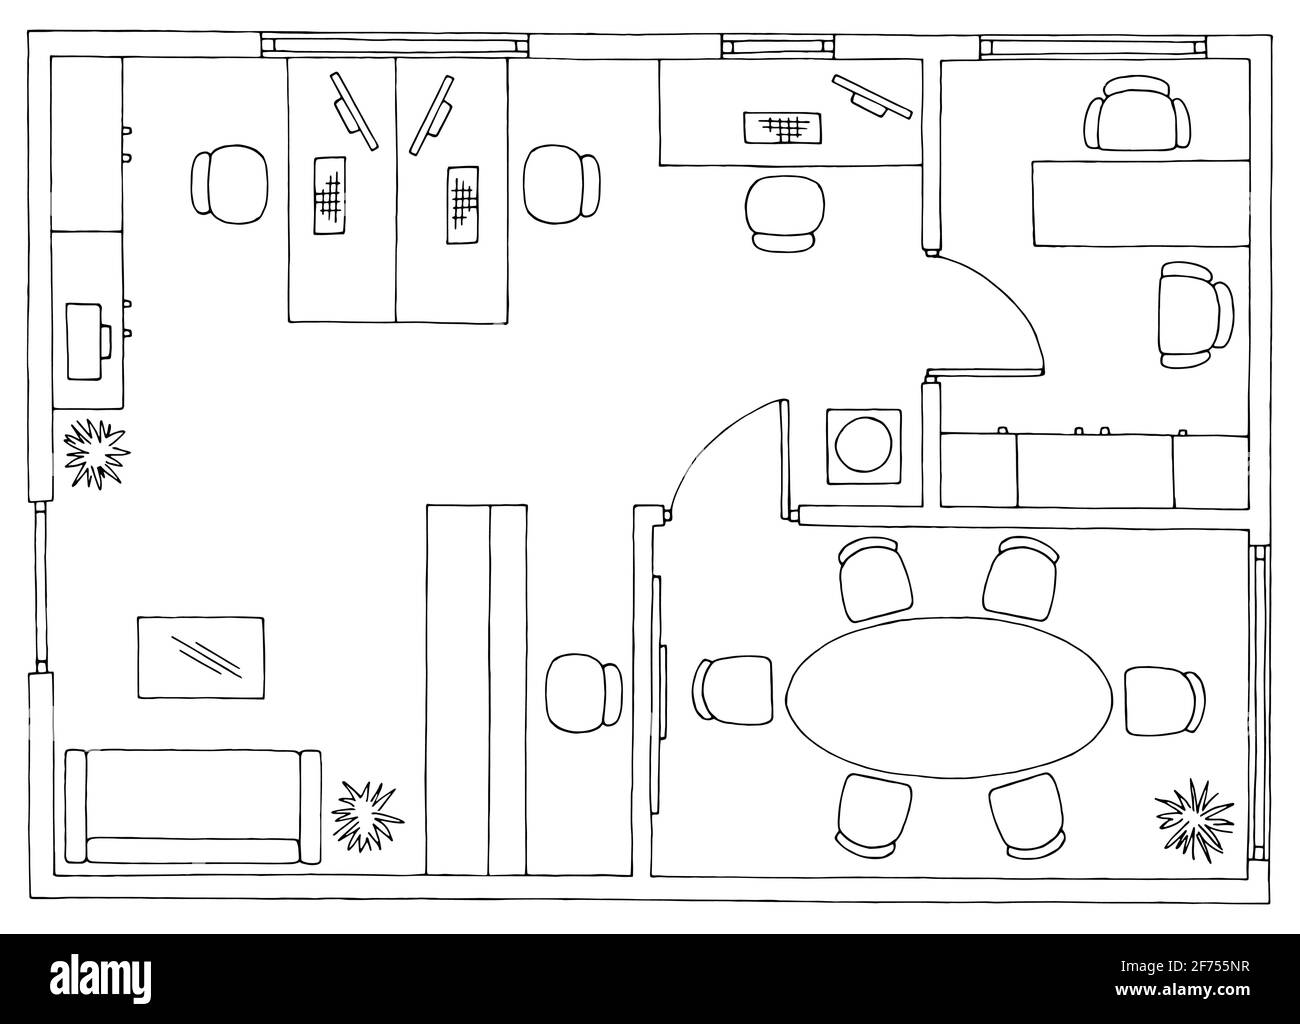 Piano ufficio architettura pavimento arredamento interno grafico bianco nero schizzo vettore di illustrazione Illustrazione Vettoriale